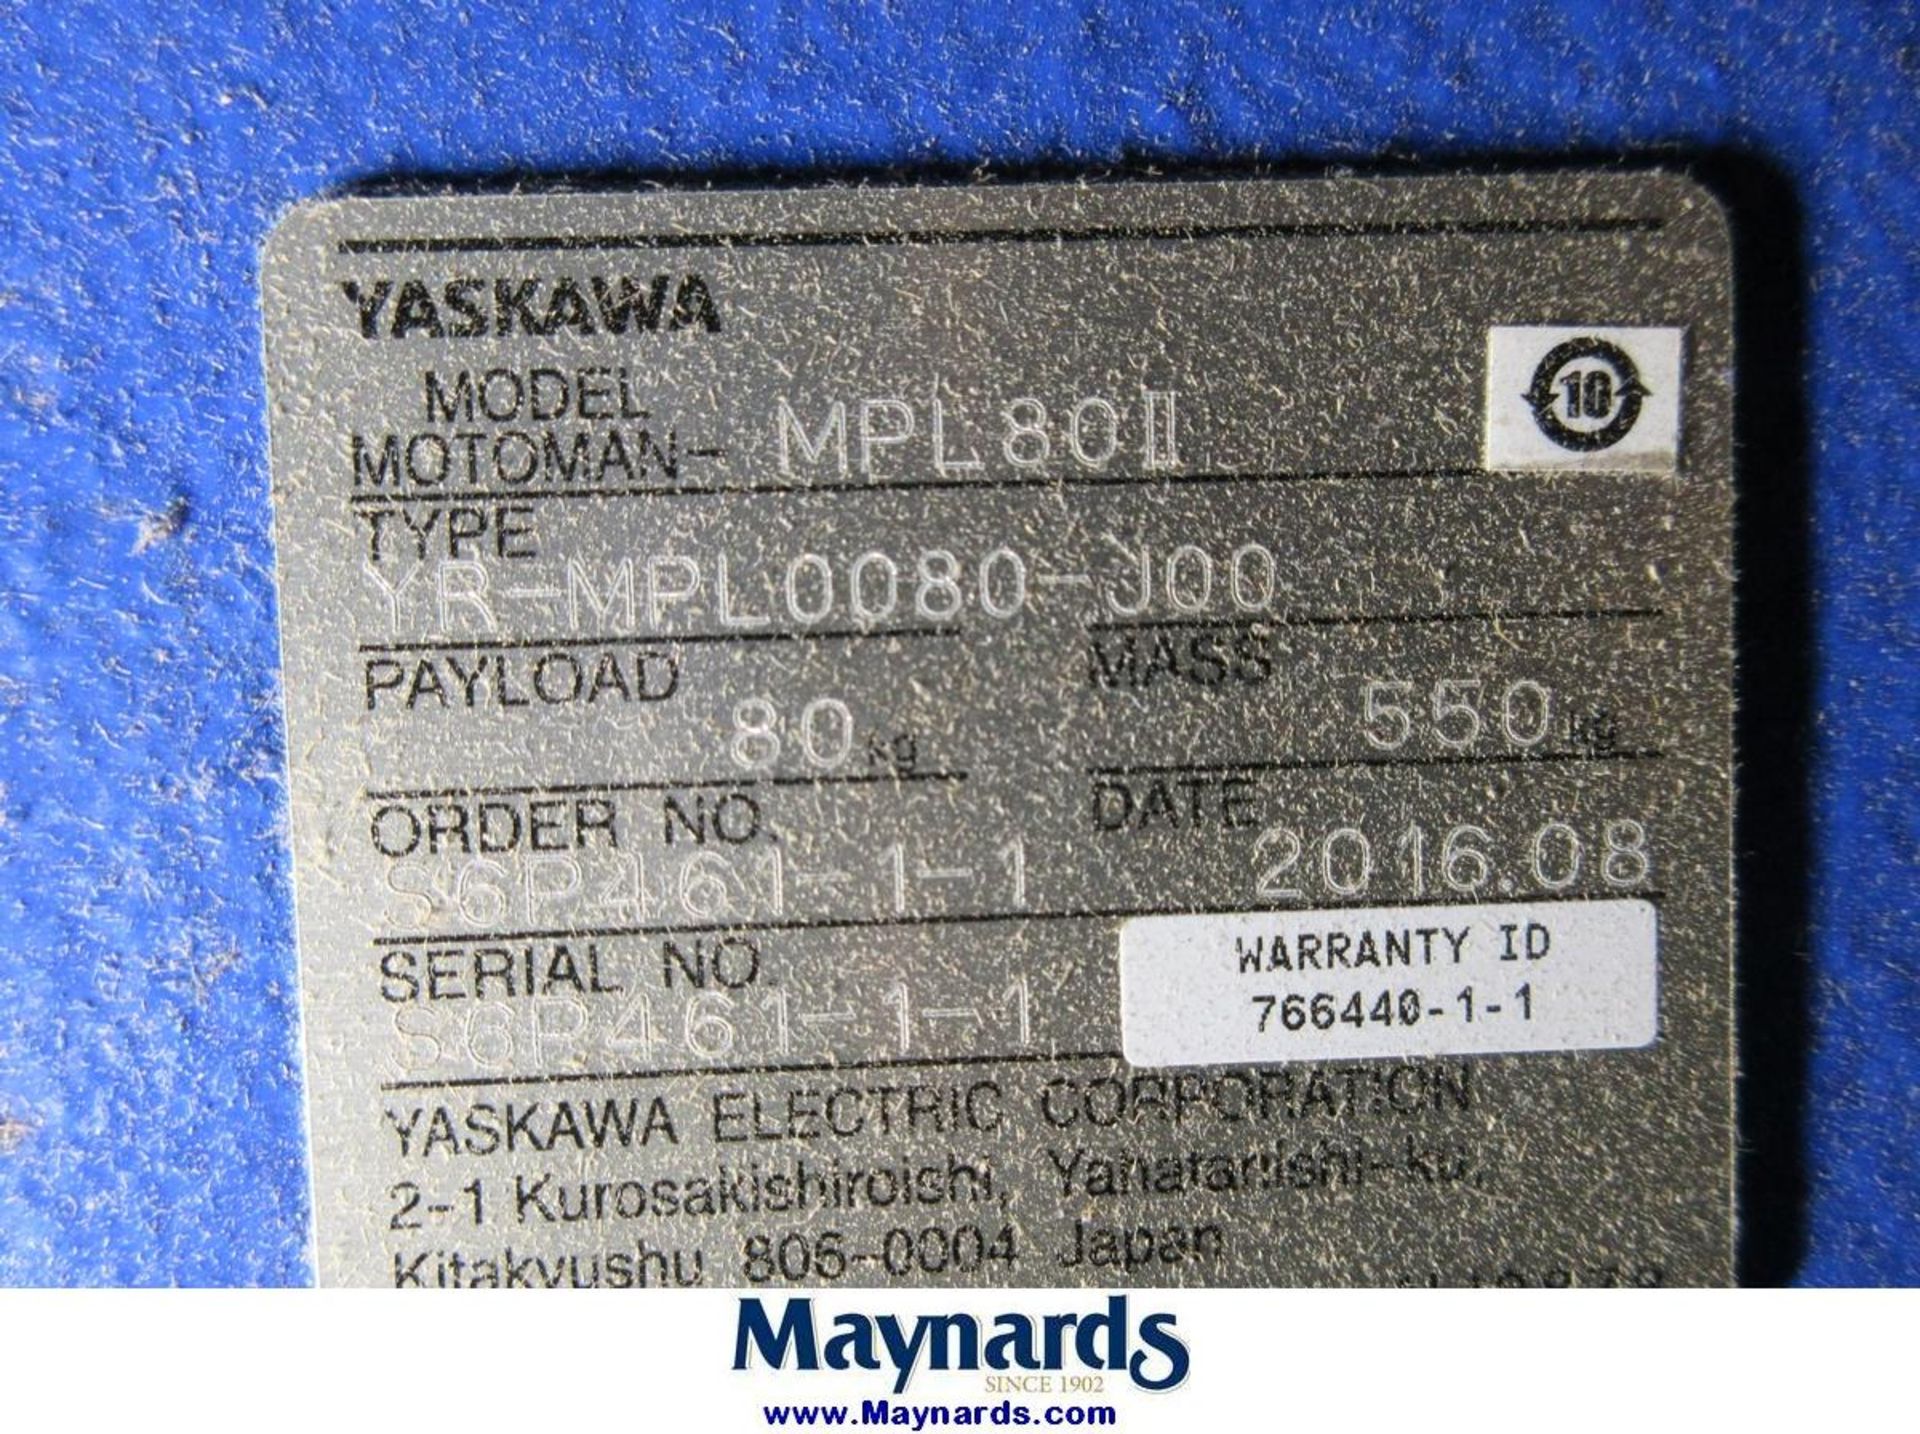 2016 Yaskawa Motoman MPL80II Type YR-MPL0080-J00 Material Handling Robot - Image 8 of 13